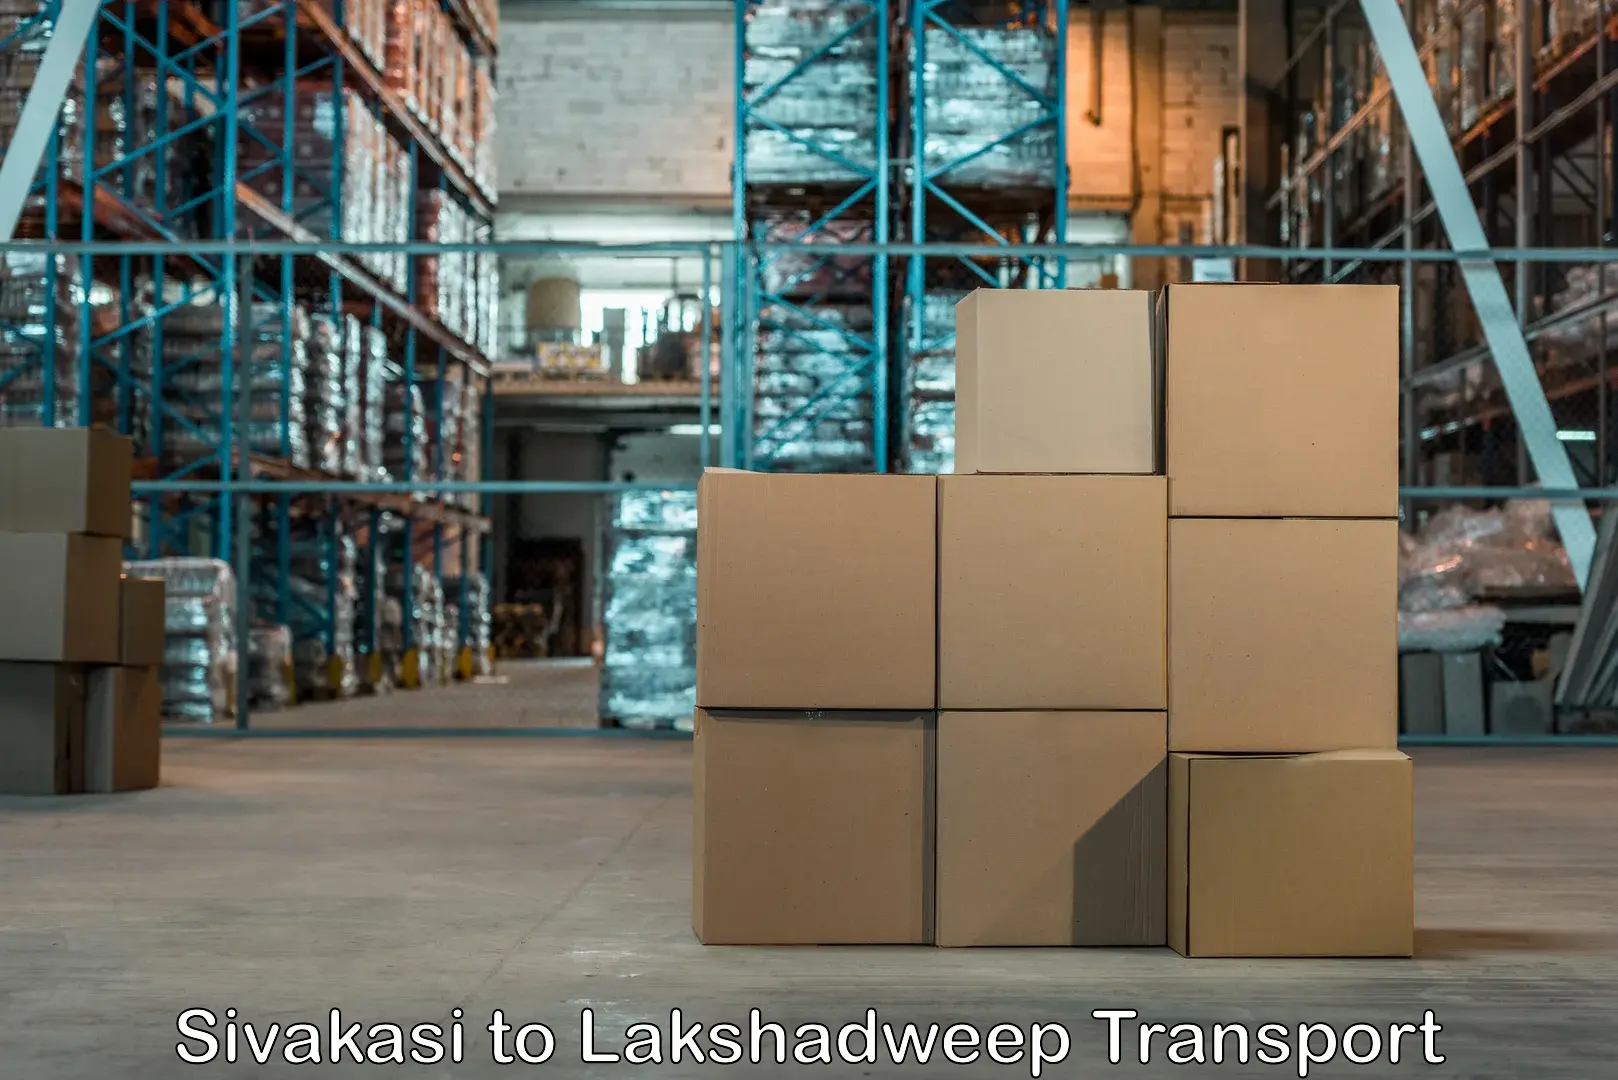 Nationwide transport services Sivakasi to Lakshadweep